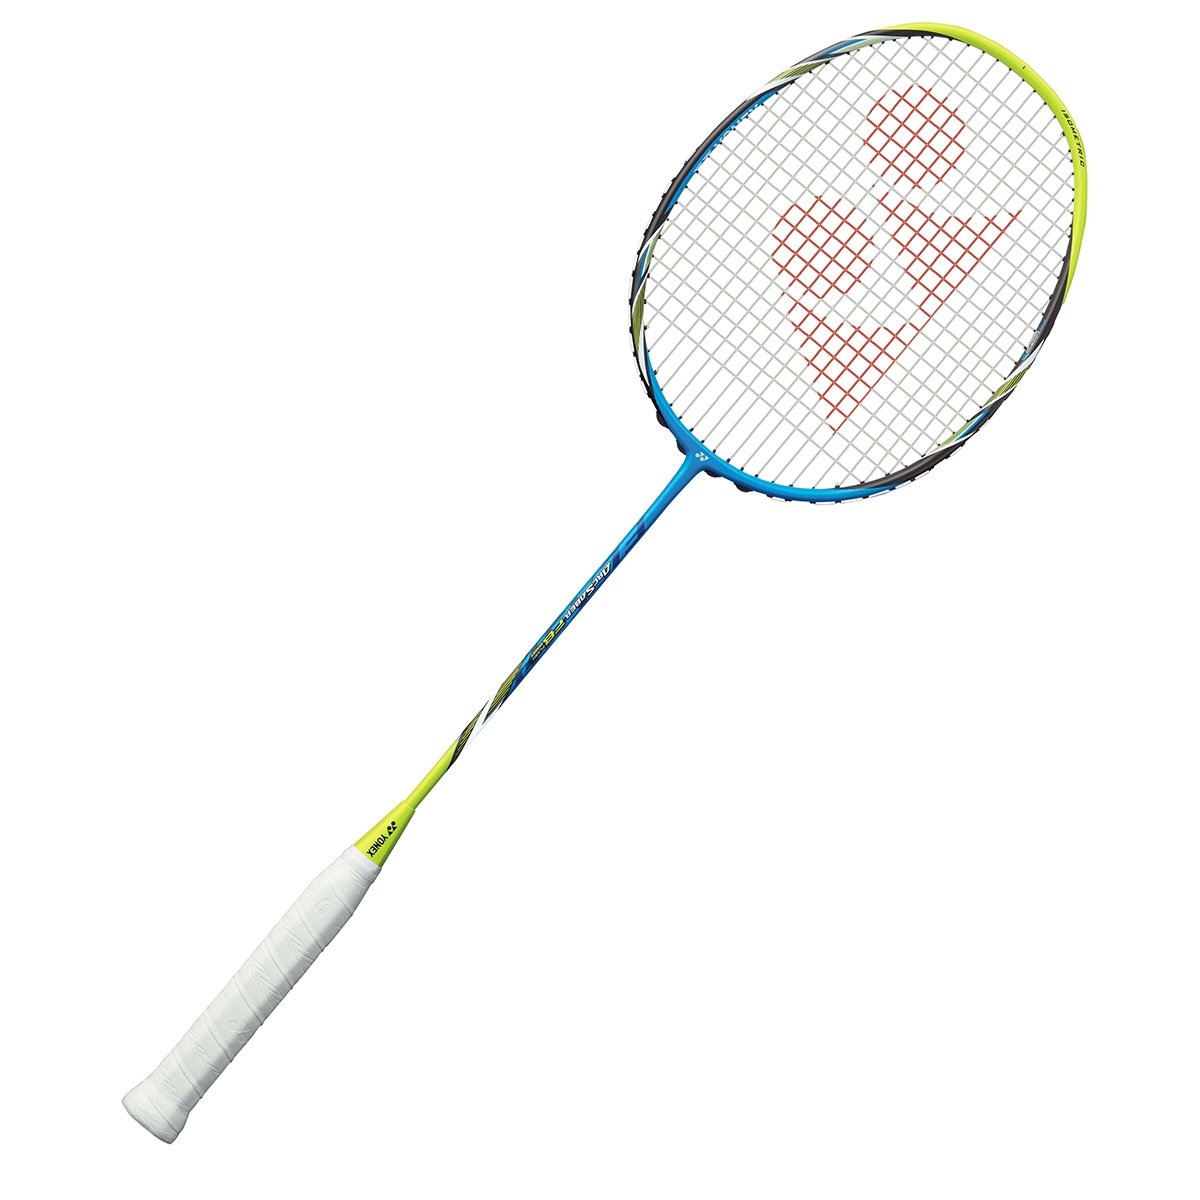 Yonex Arcsaber FB badminton racket